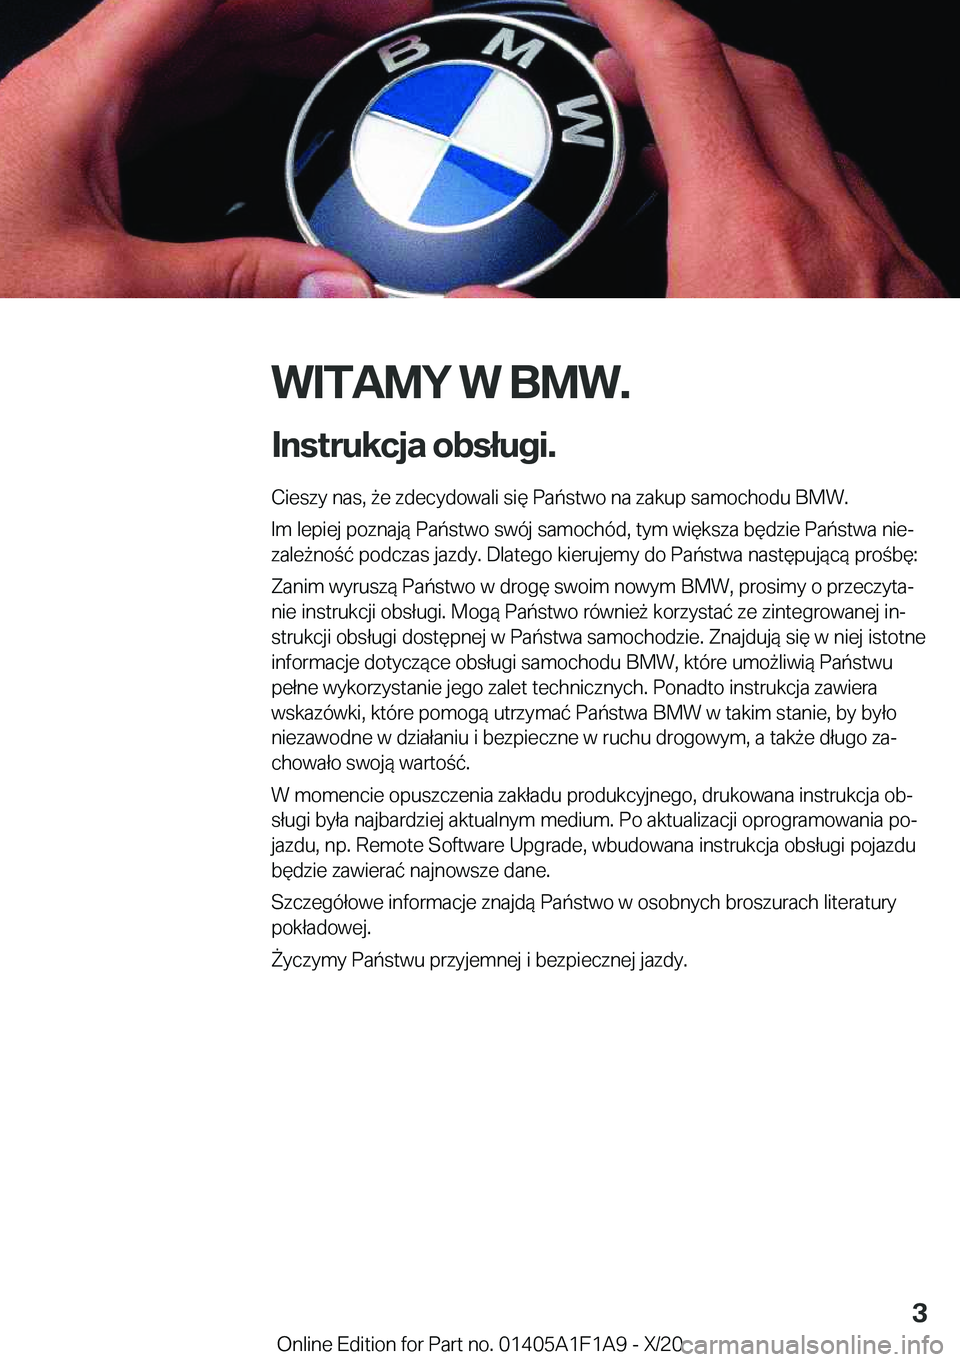 BMW M5 2021  Instrukcja obsługi (in Polish) �W�I�T�A�M�Y��W��B�M�W�.
�I�n�s�t�r�u�k�c�j�a��o�b�s�ł�u�g�i�. �C�i�e�s�z�y��n�a�s�,�9�e��z�d�e�c�y�d�o�w�a�l�i��s�i�